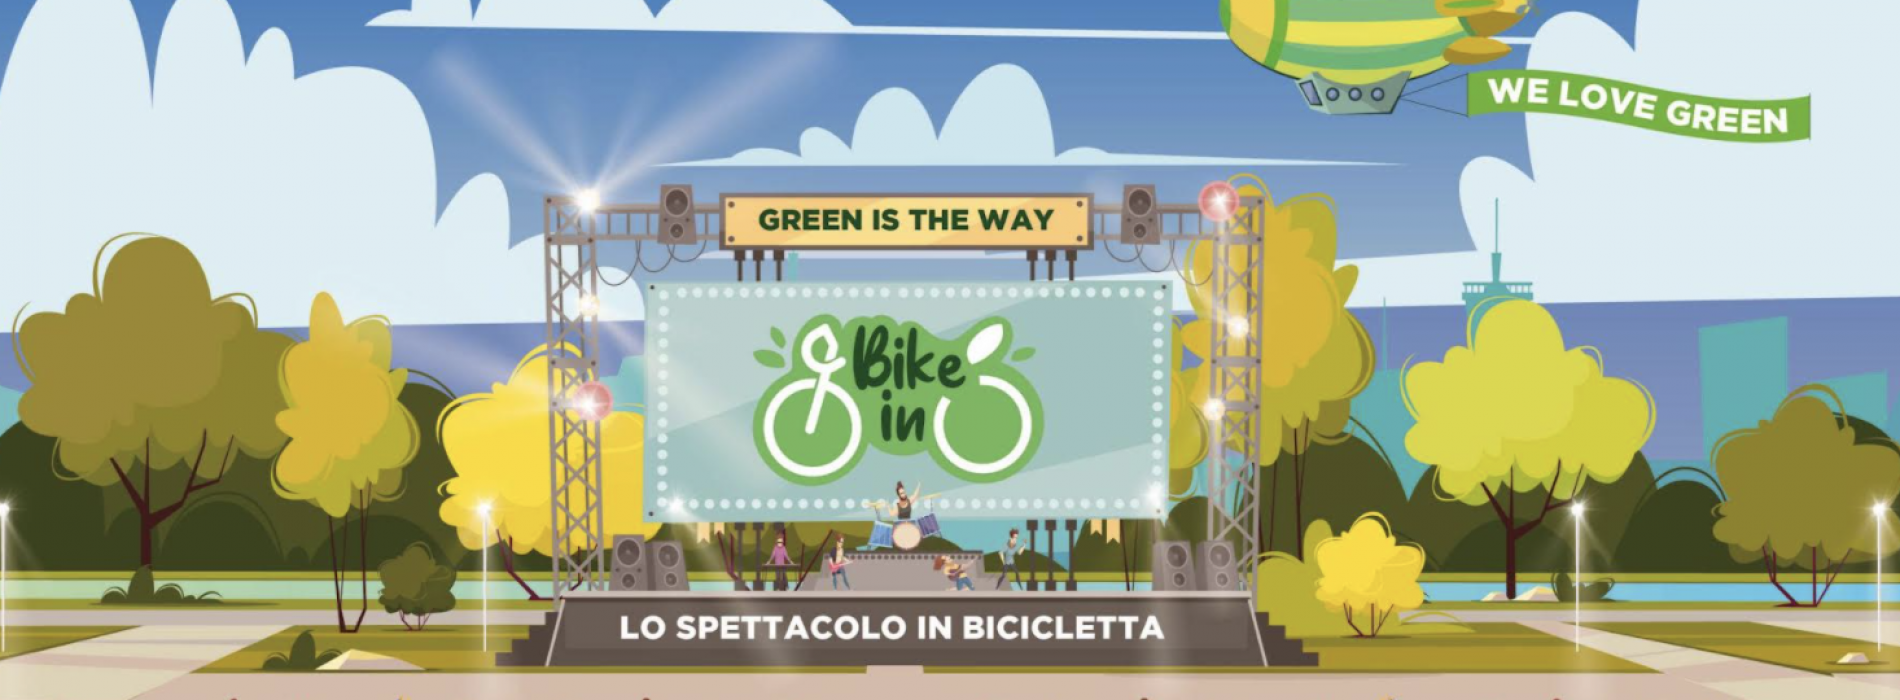 Bike-in, festival eco friendly a Napoli con 3 giorni di concerti